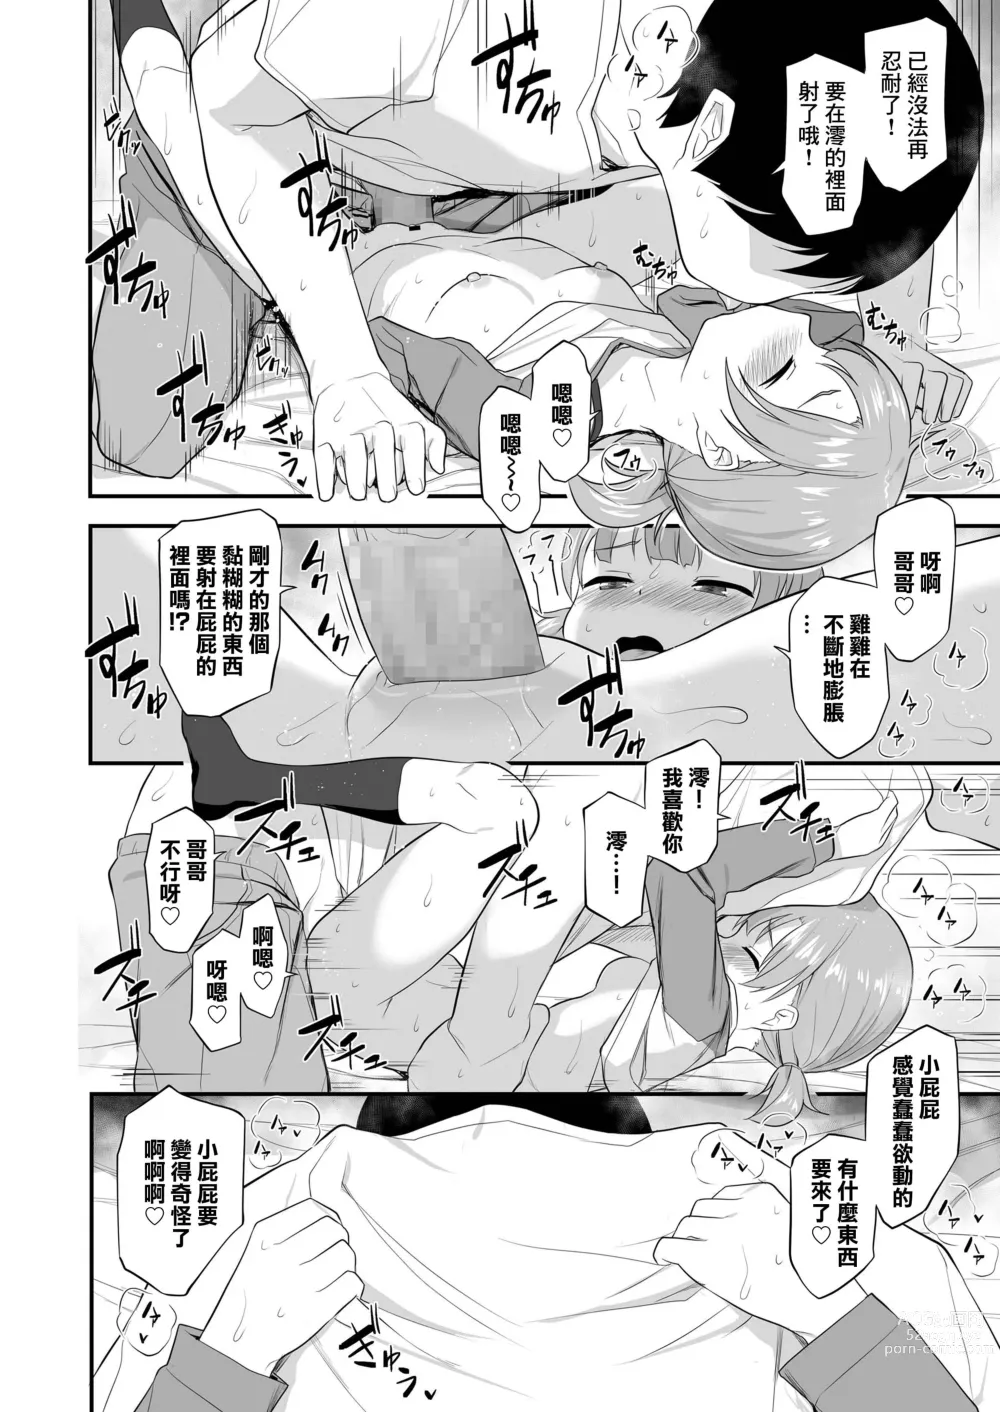 Page 18 of manga Imouto Gokoro to Haru no Sora